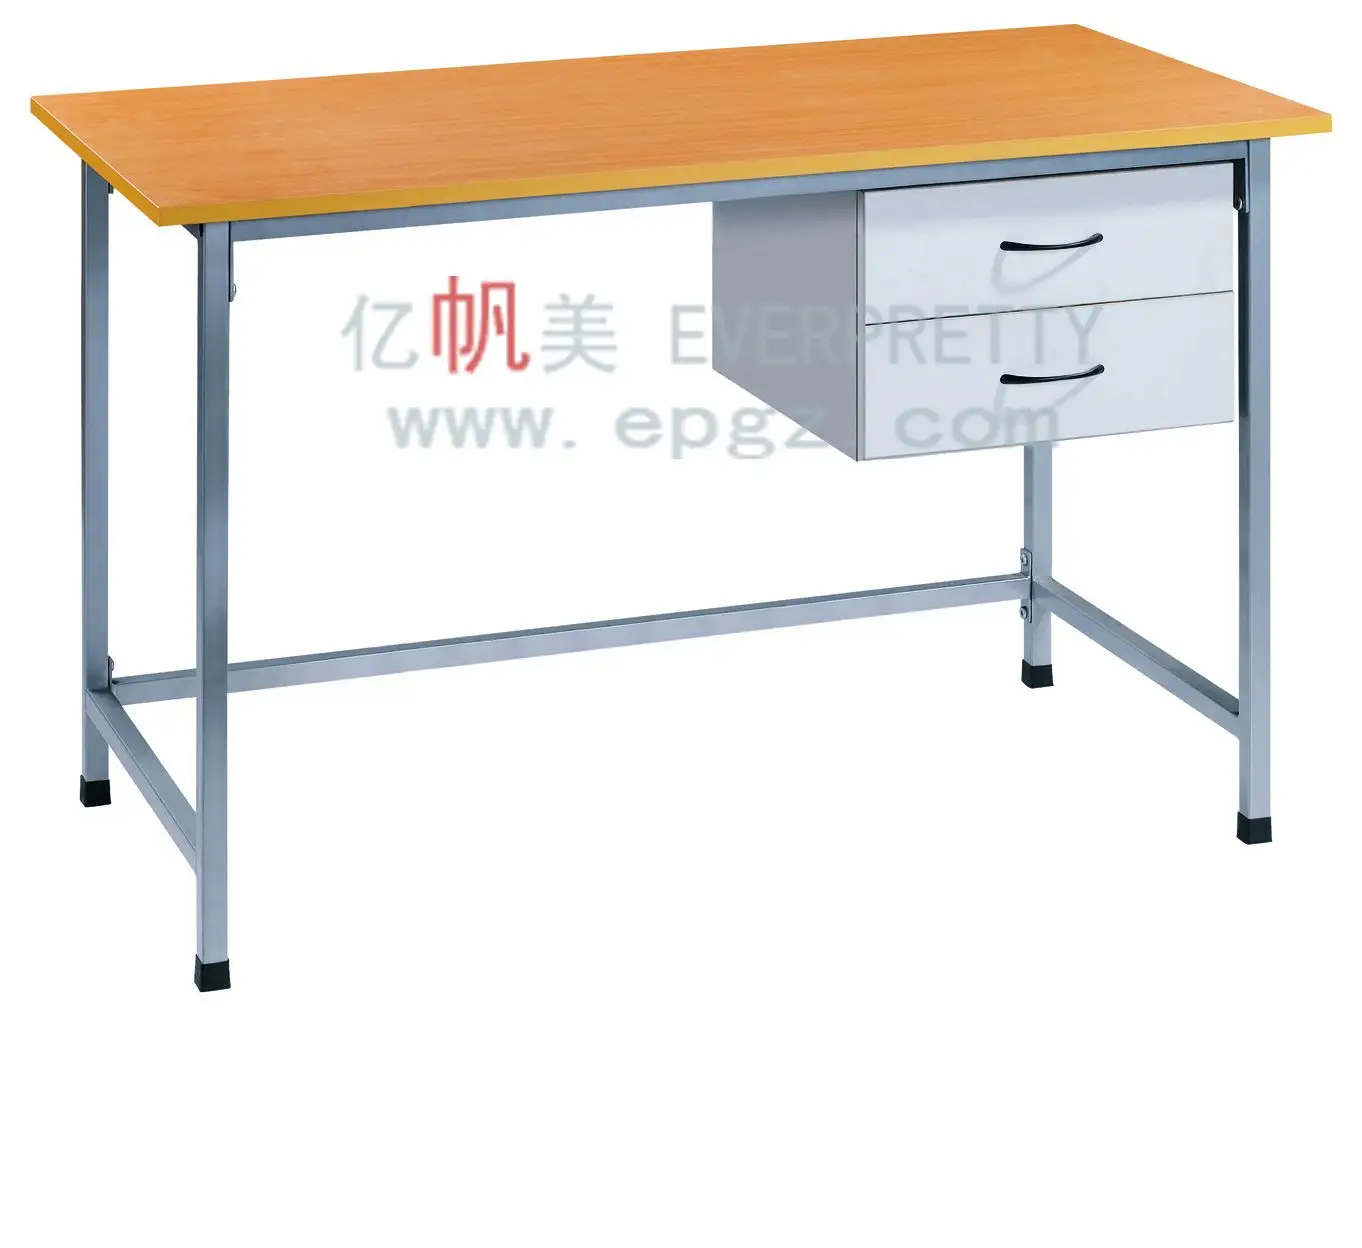 Furnitur meja sekolah desain sederhana meja guru desain meja kayu dengan 2 laci